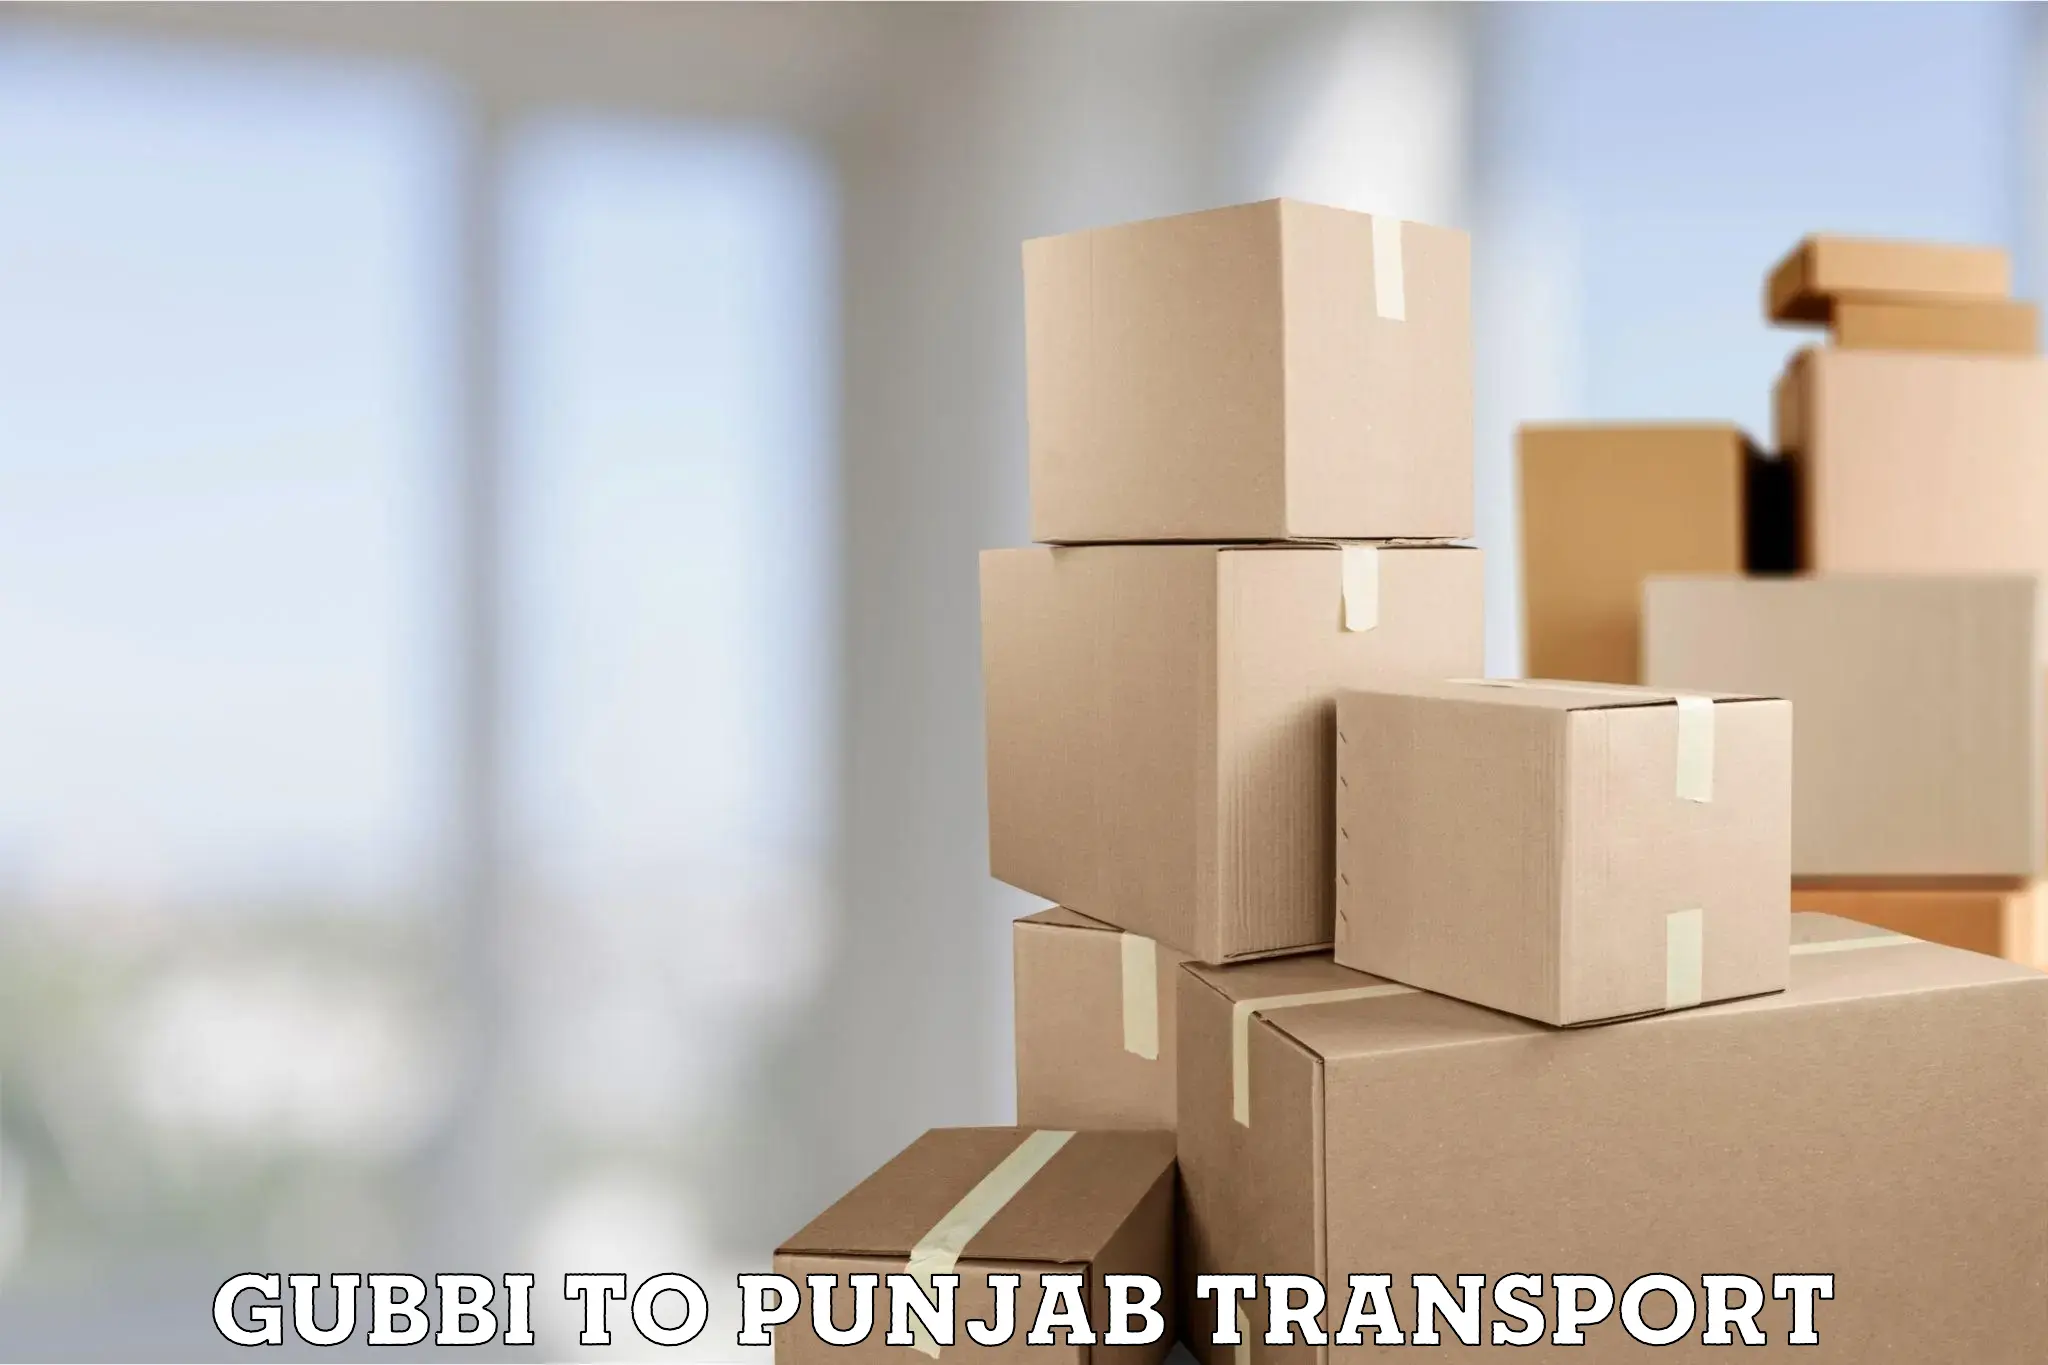 Transportation solution services Gubbi to Dinanagar